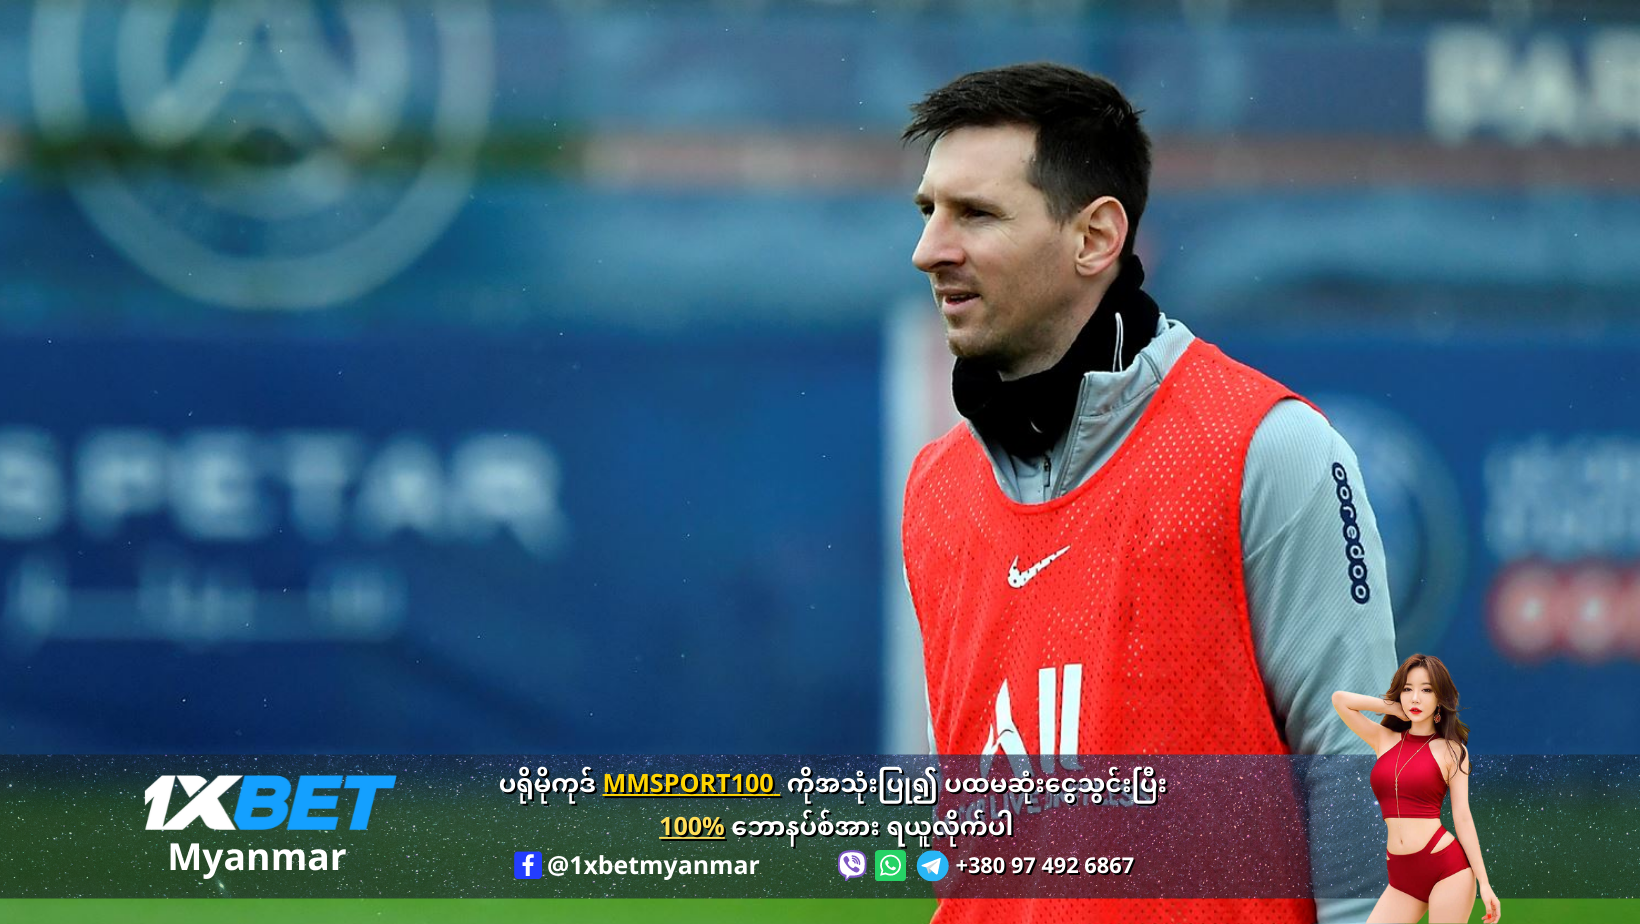 Lionel Messi in training